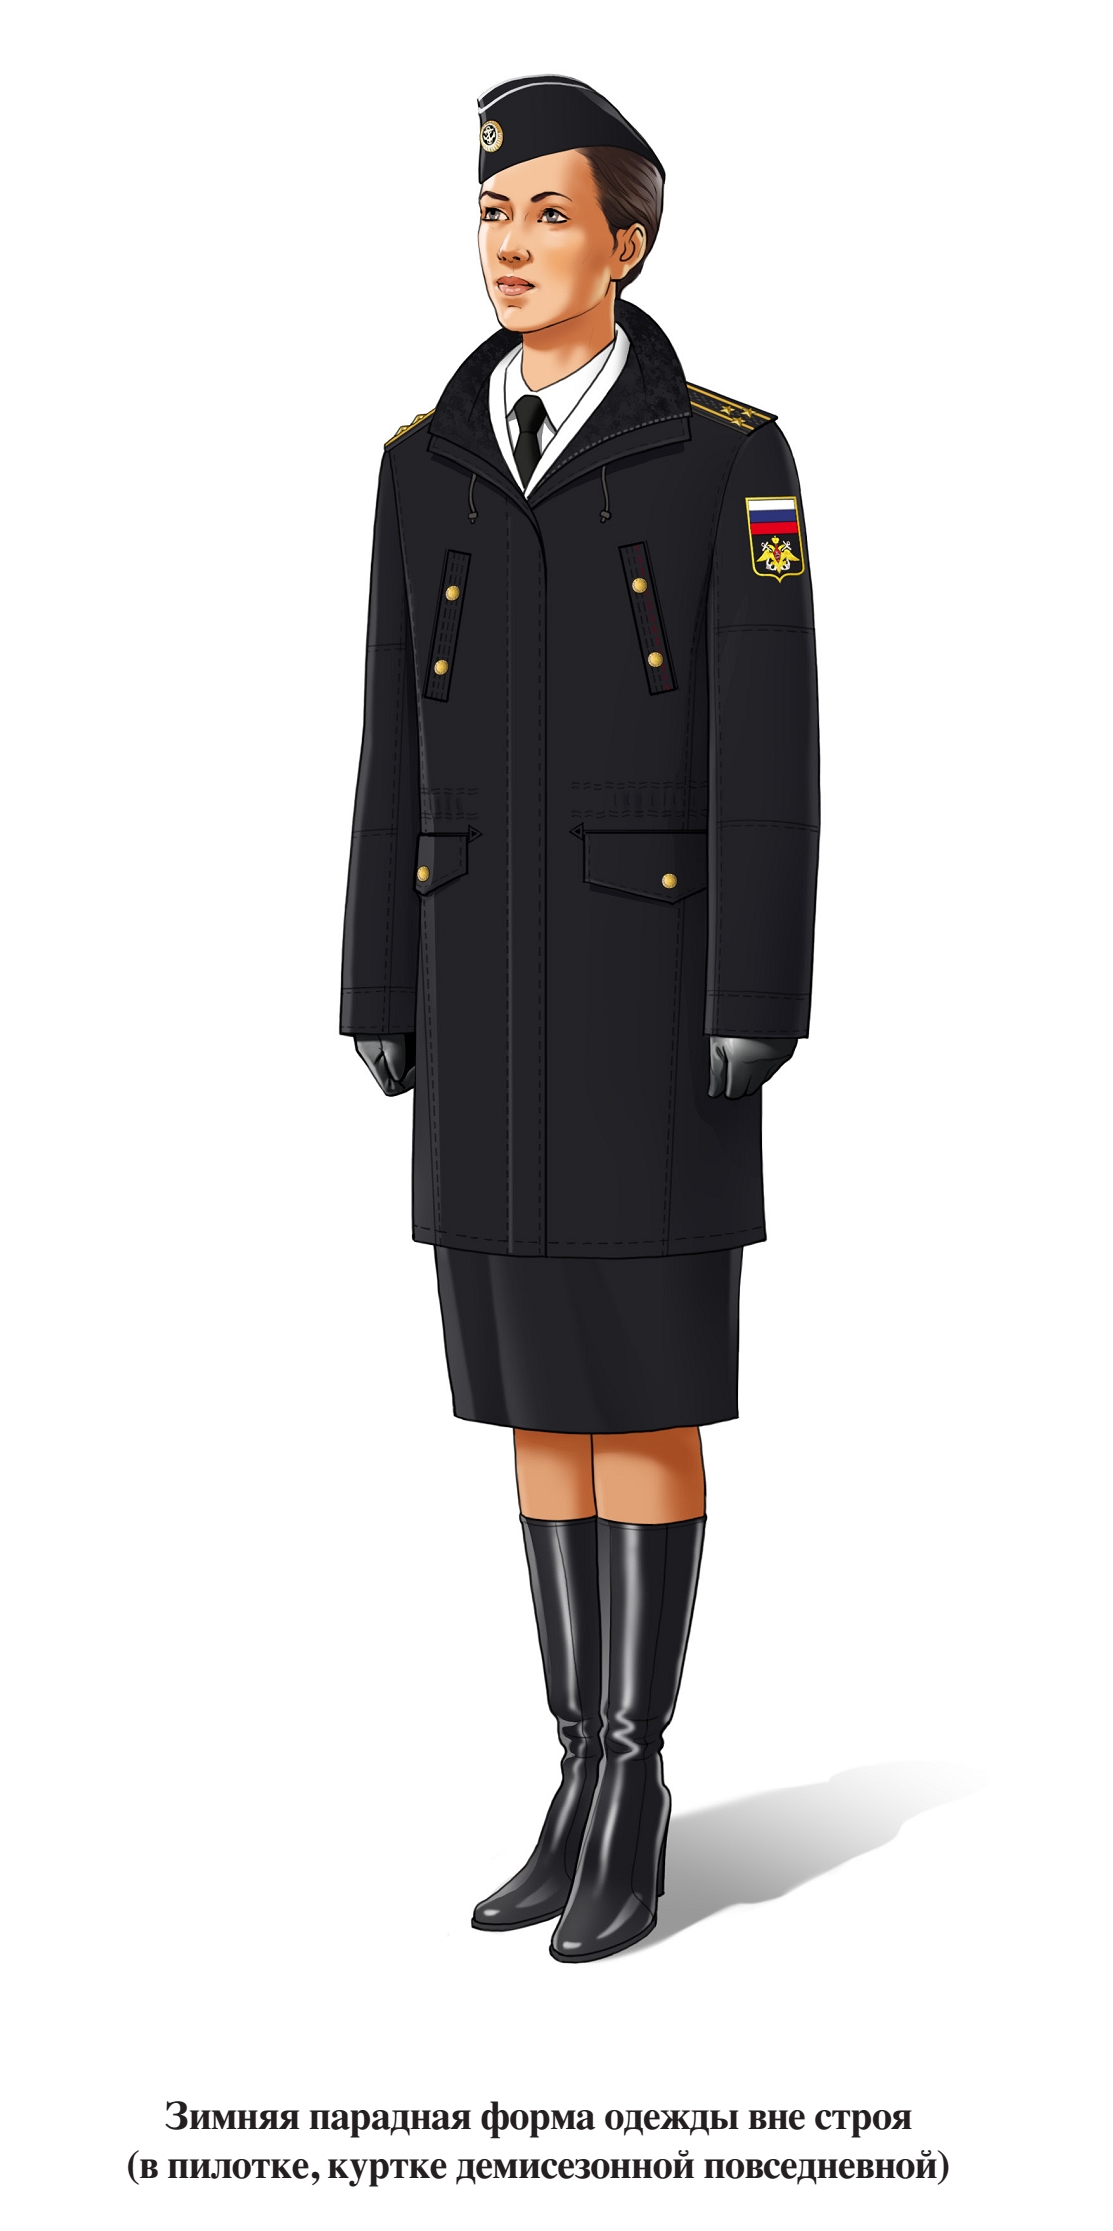 Зимняя парадная форма военнослужащих женского пола ВМФ вне строя